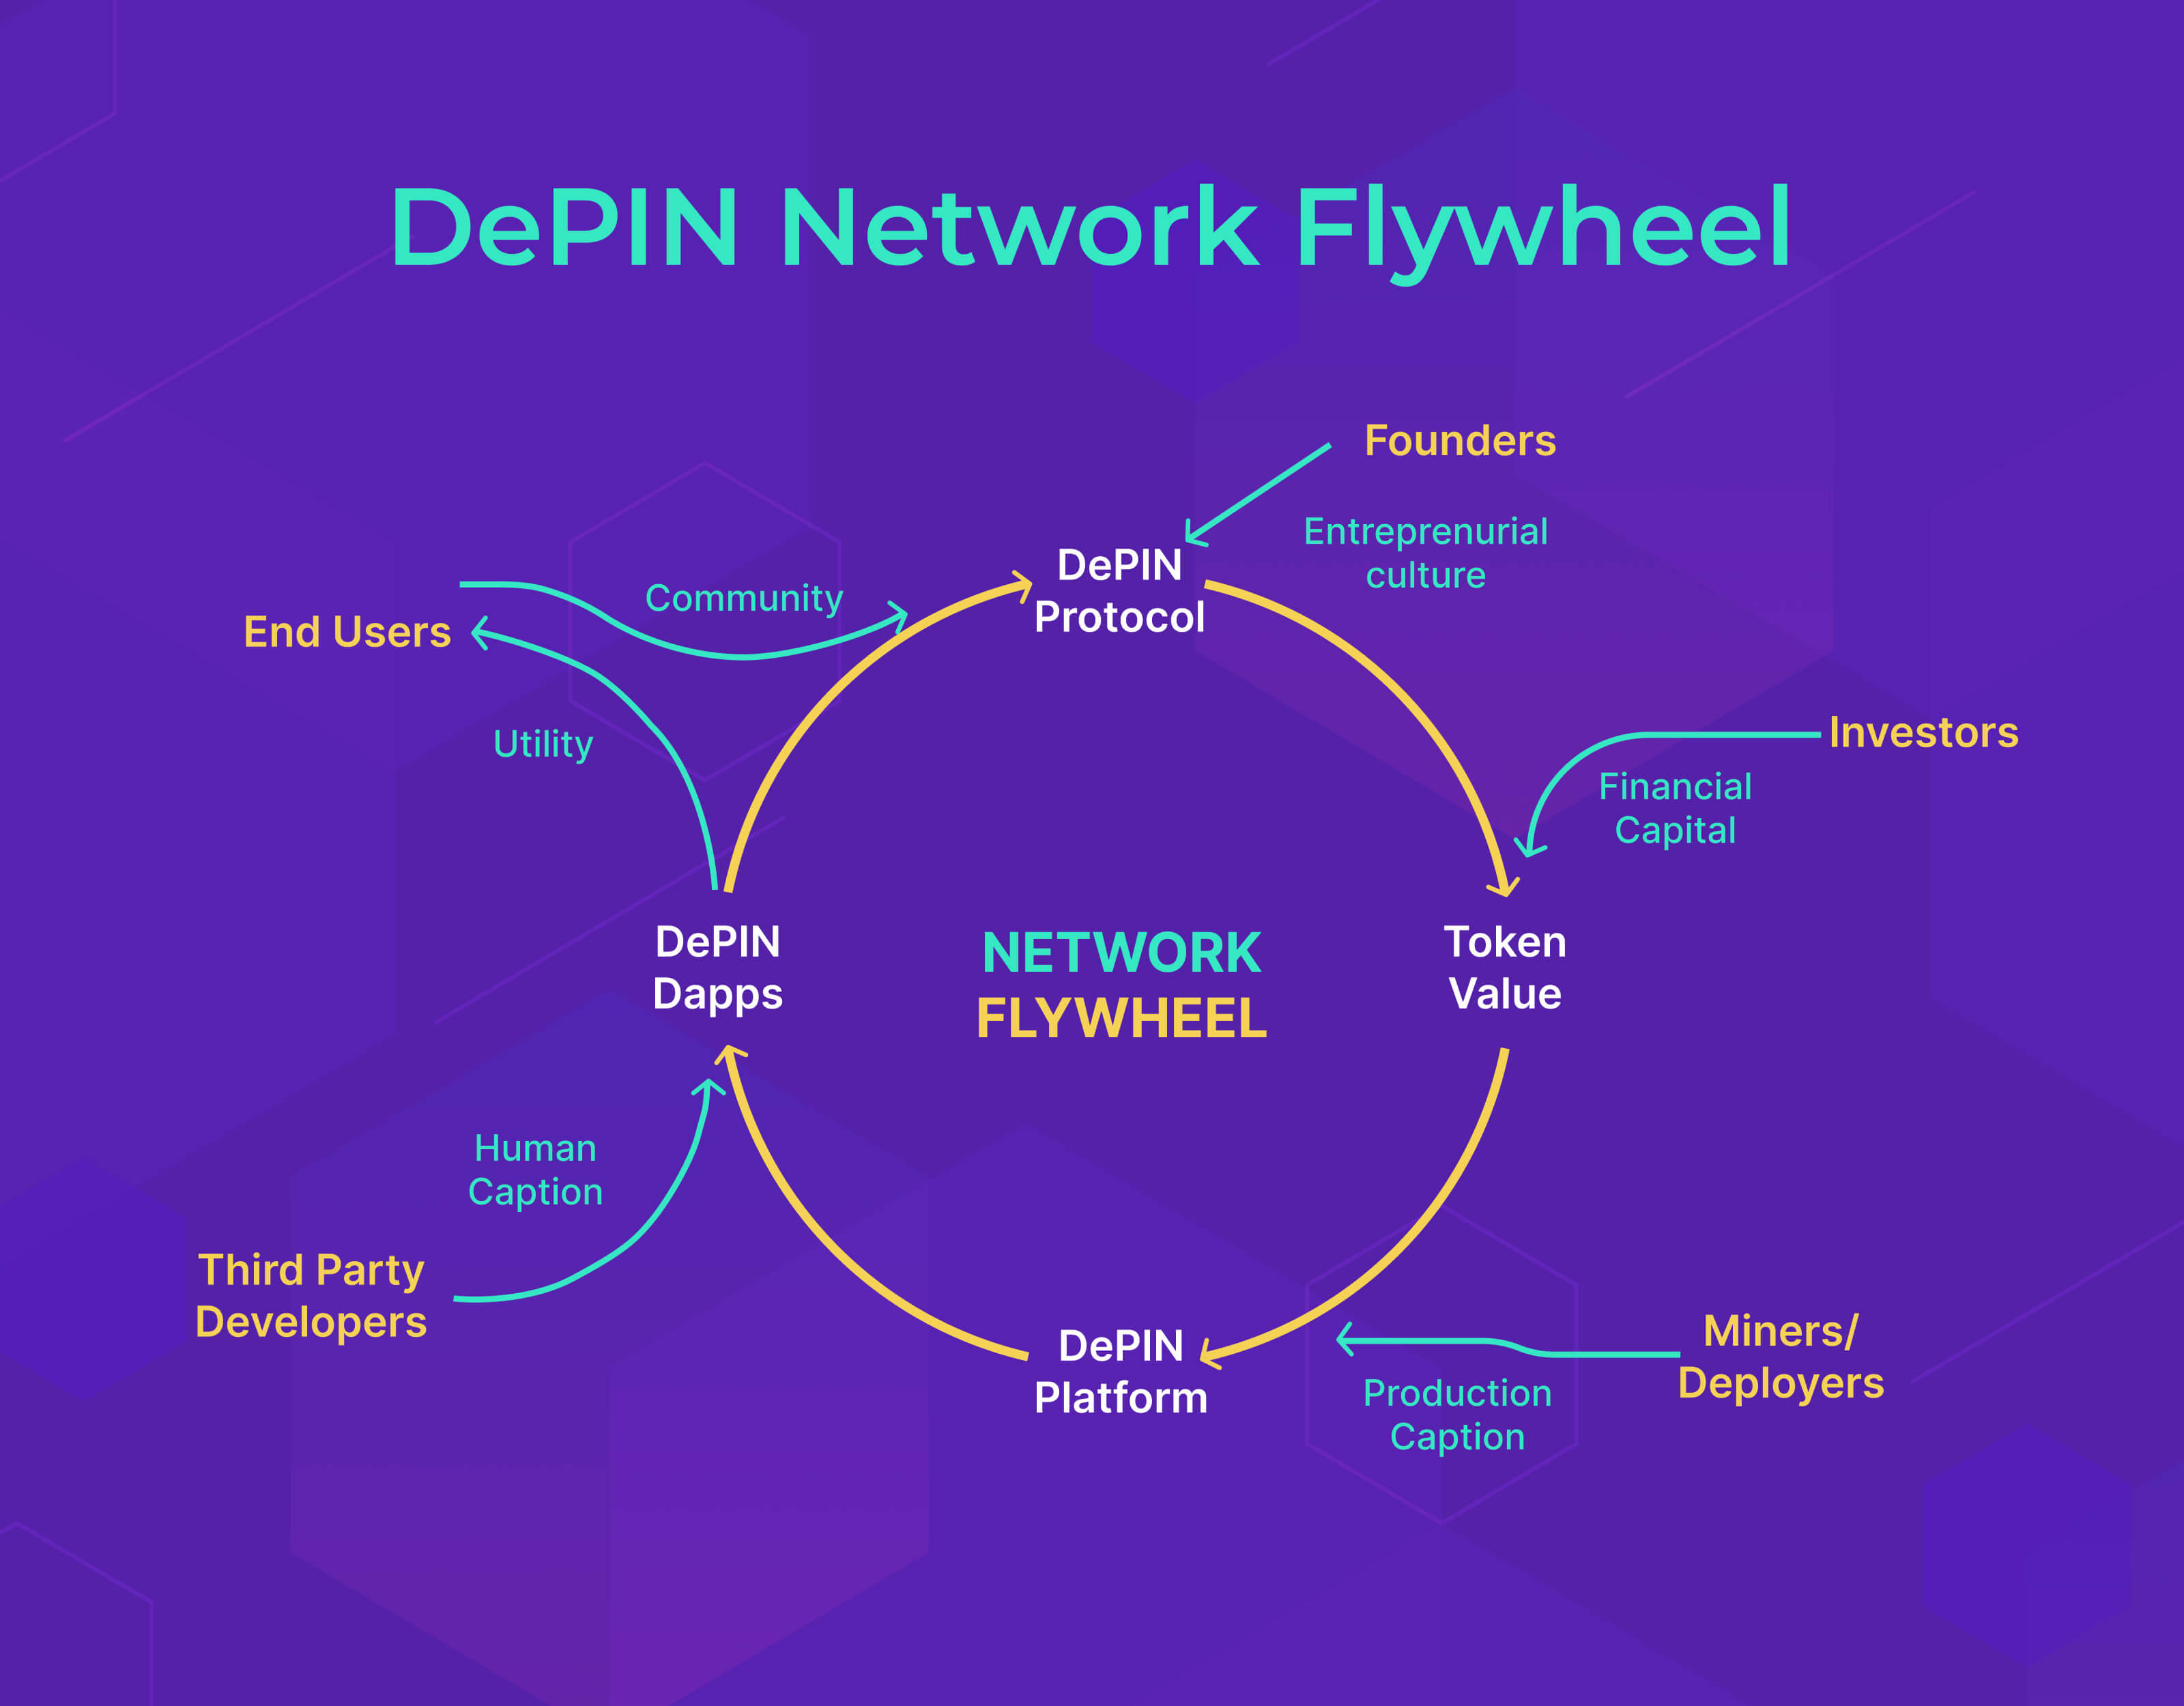 Depin Network Flywheel